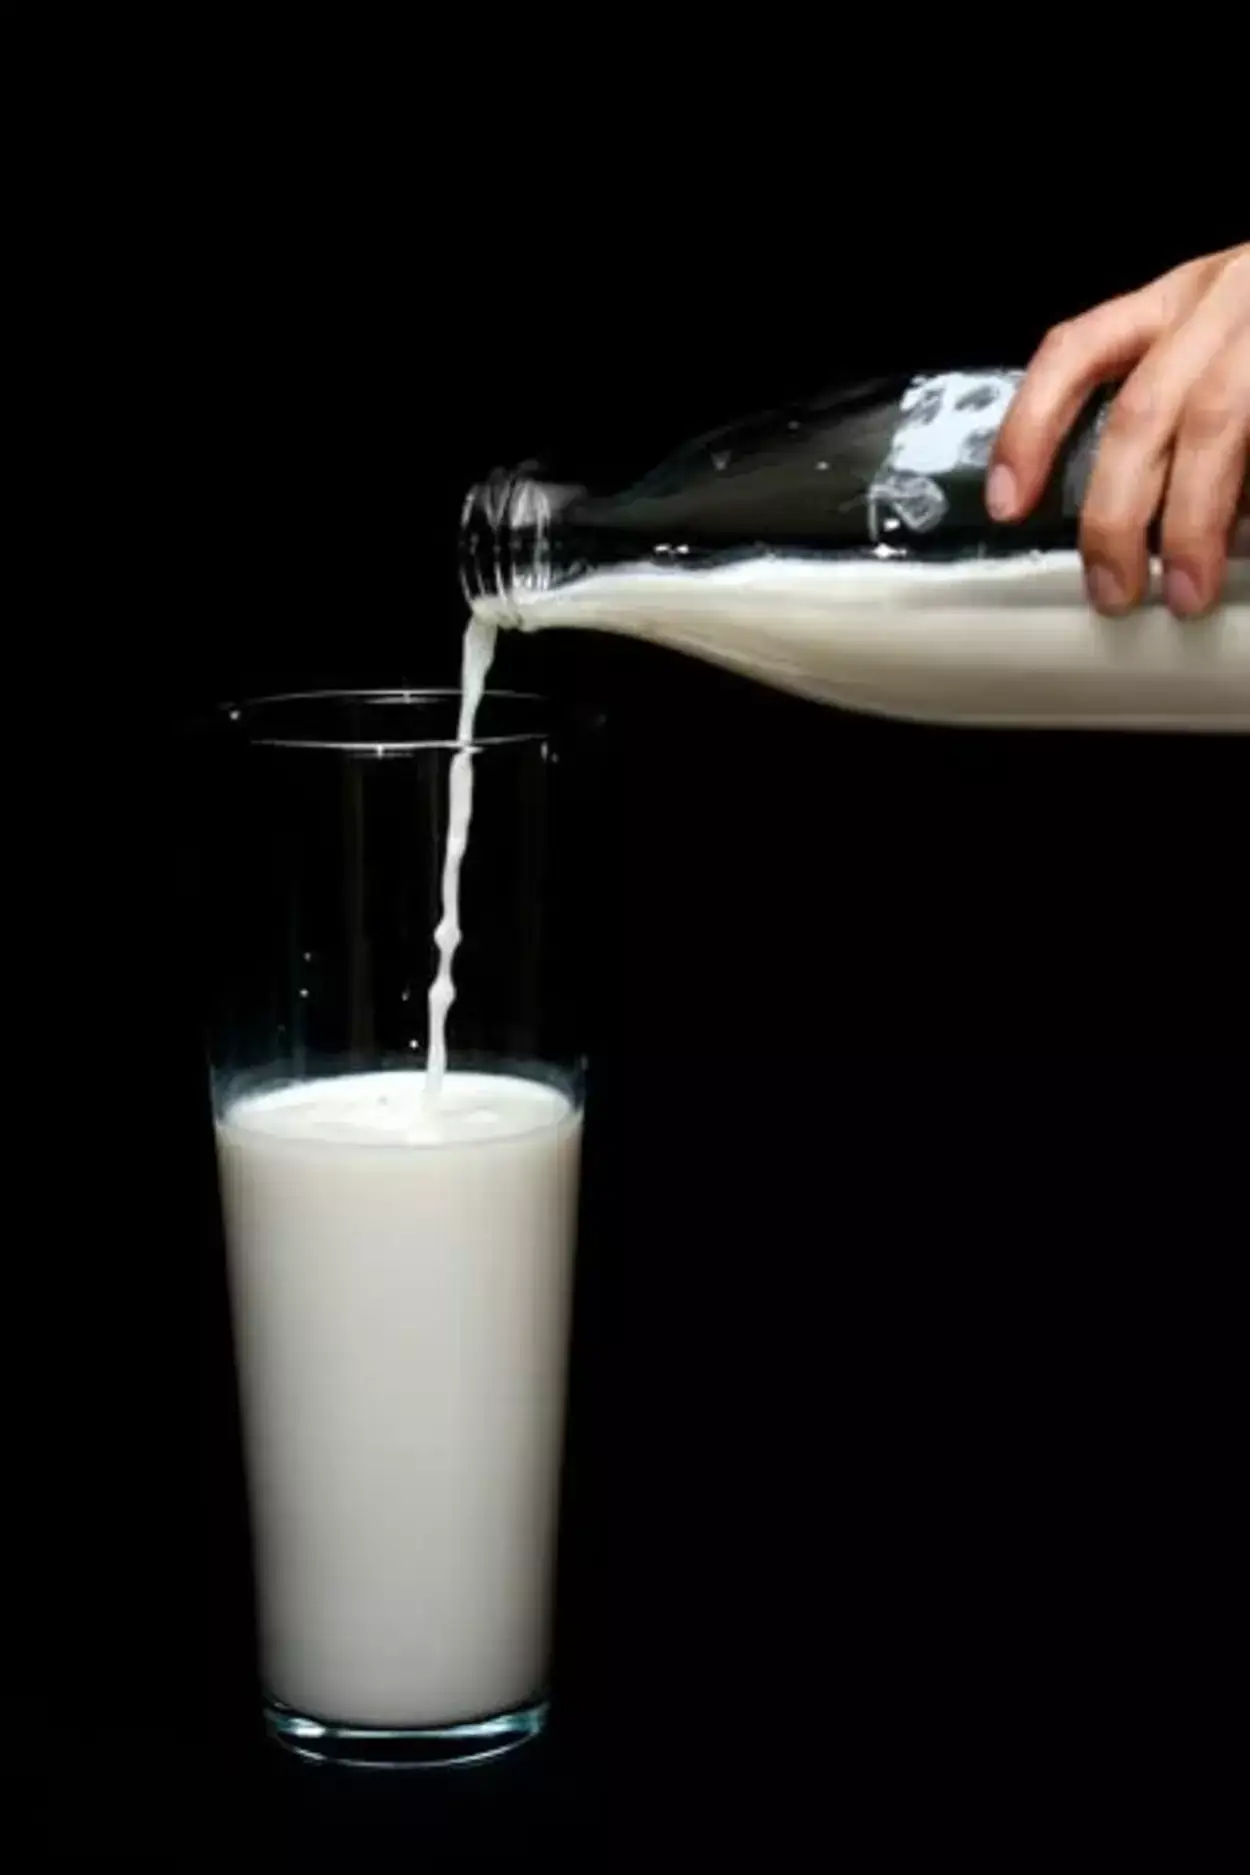  Koja je razlika između mlijeka s vitaminom D i punomasnog mlijeka? (Objašnjeno) – Sve razlike